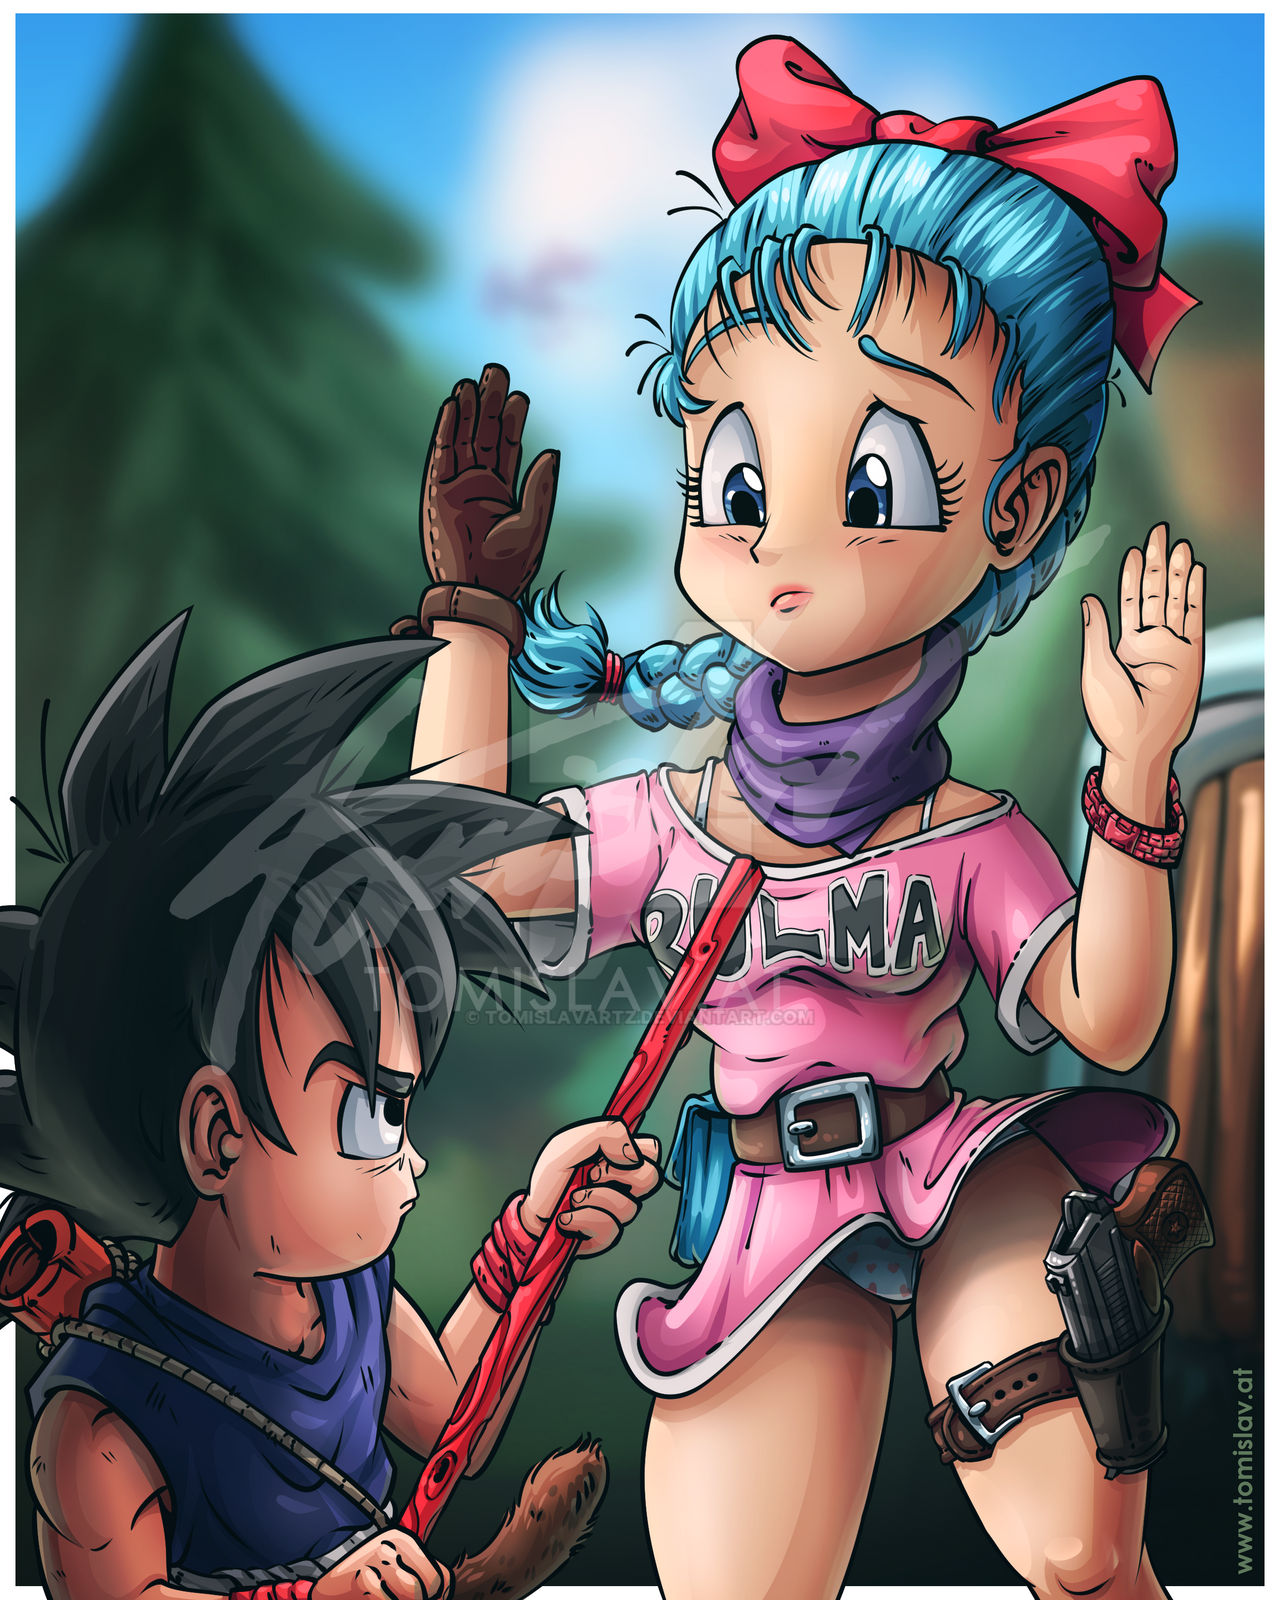 Goku meets Bulma by TomislavArtz on DeviantArt